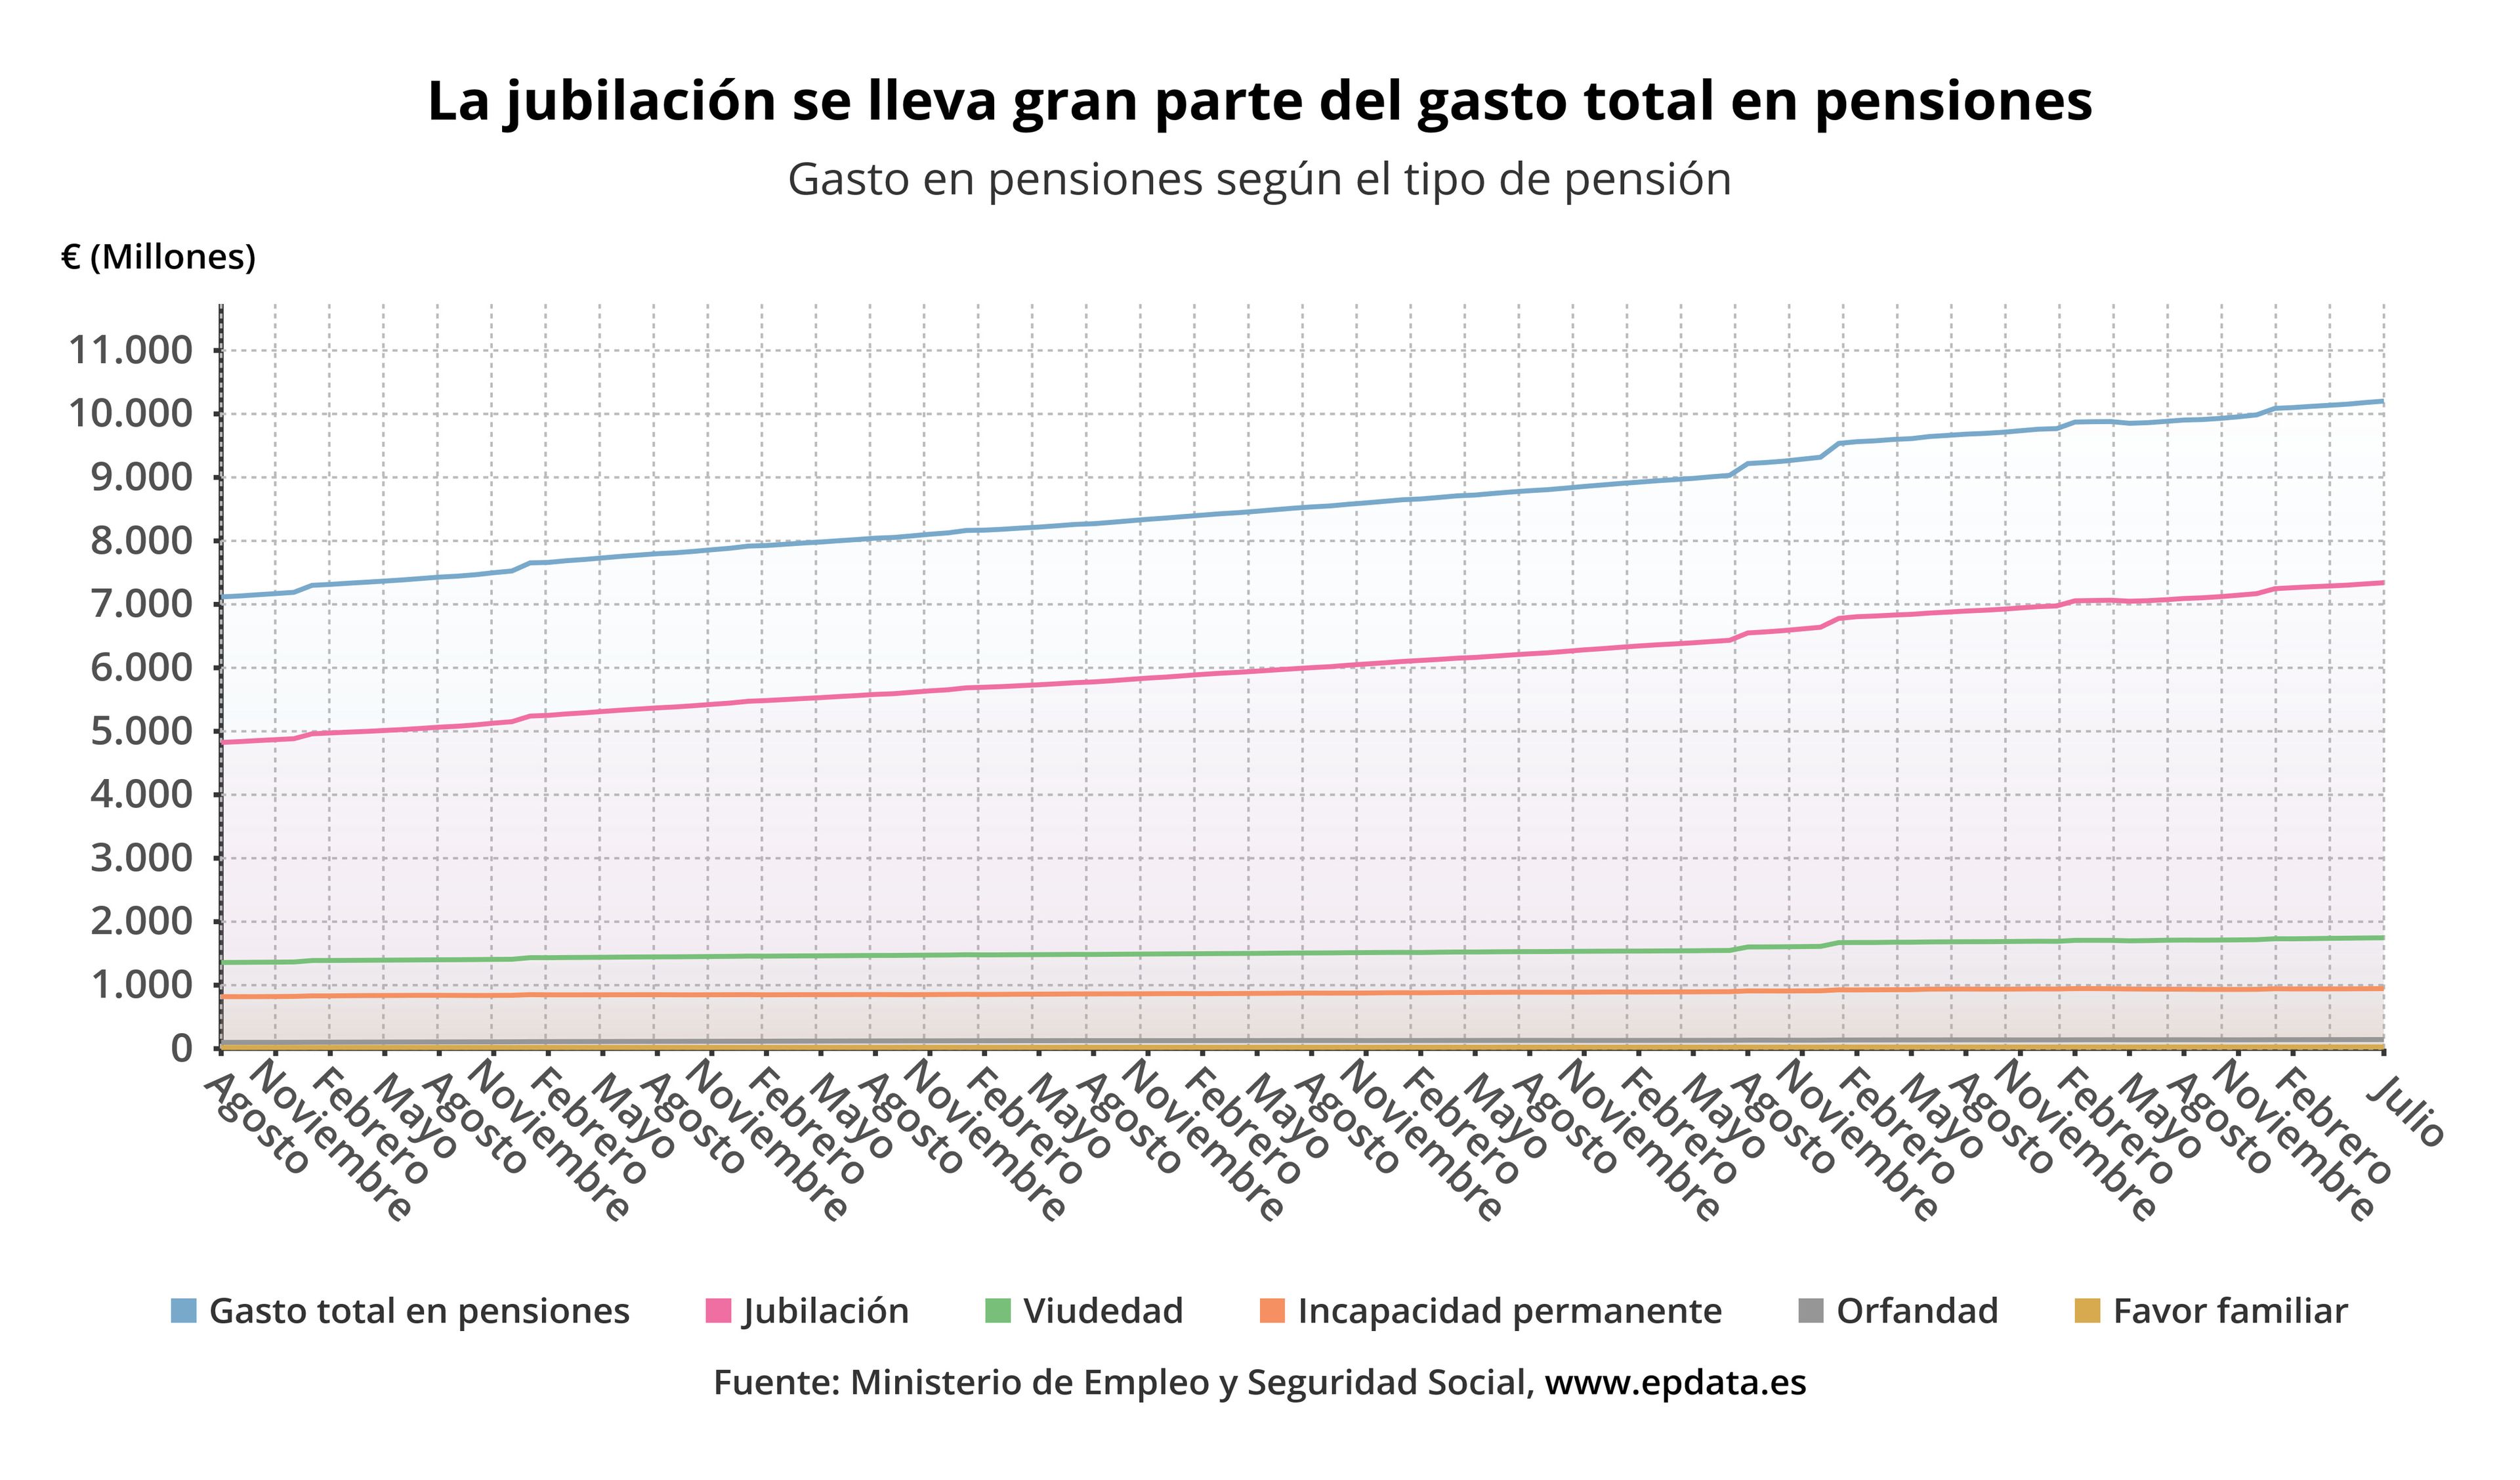 Evolución del gasto según el tipo de pensión en España, desde agosto de 2011 hasta julio de 2021.